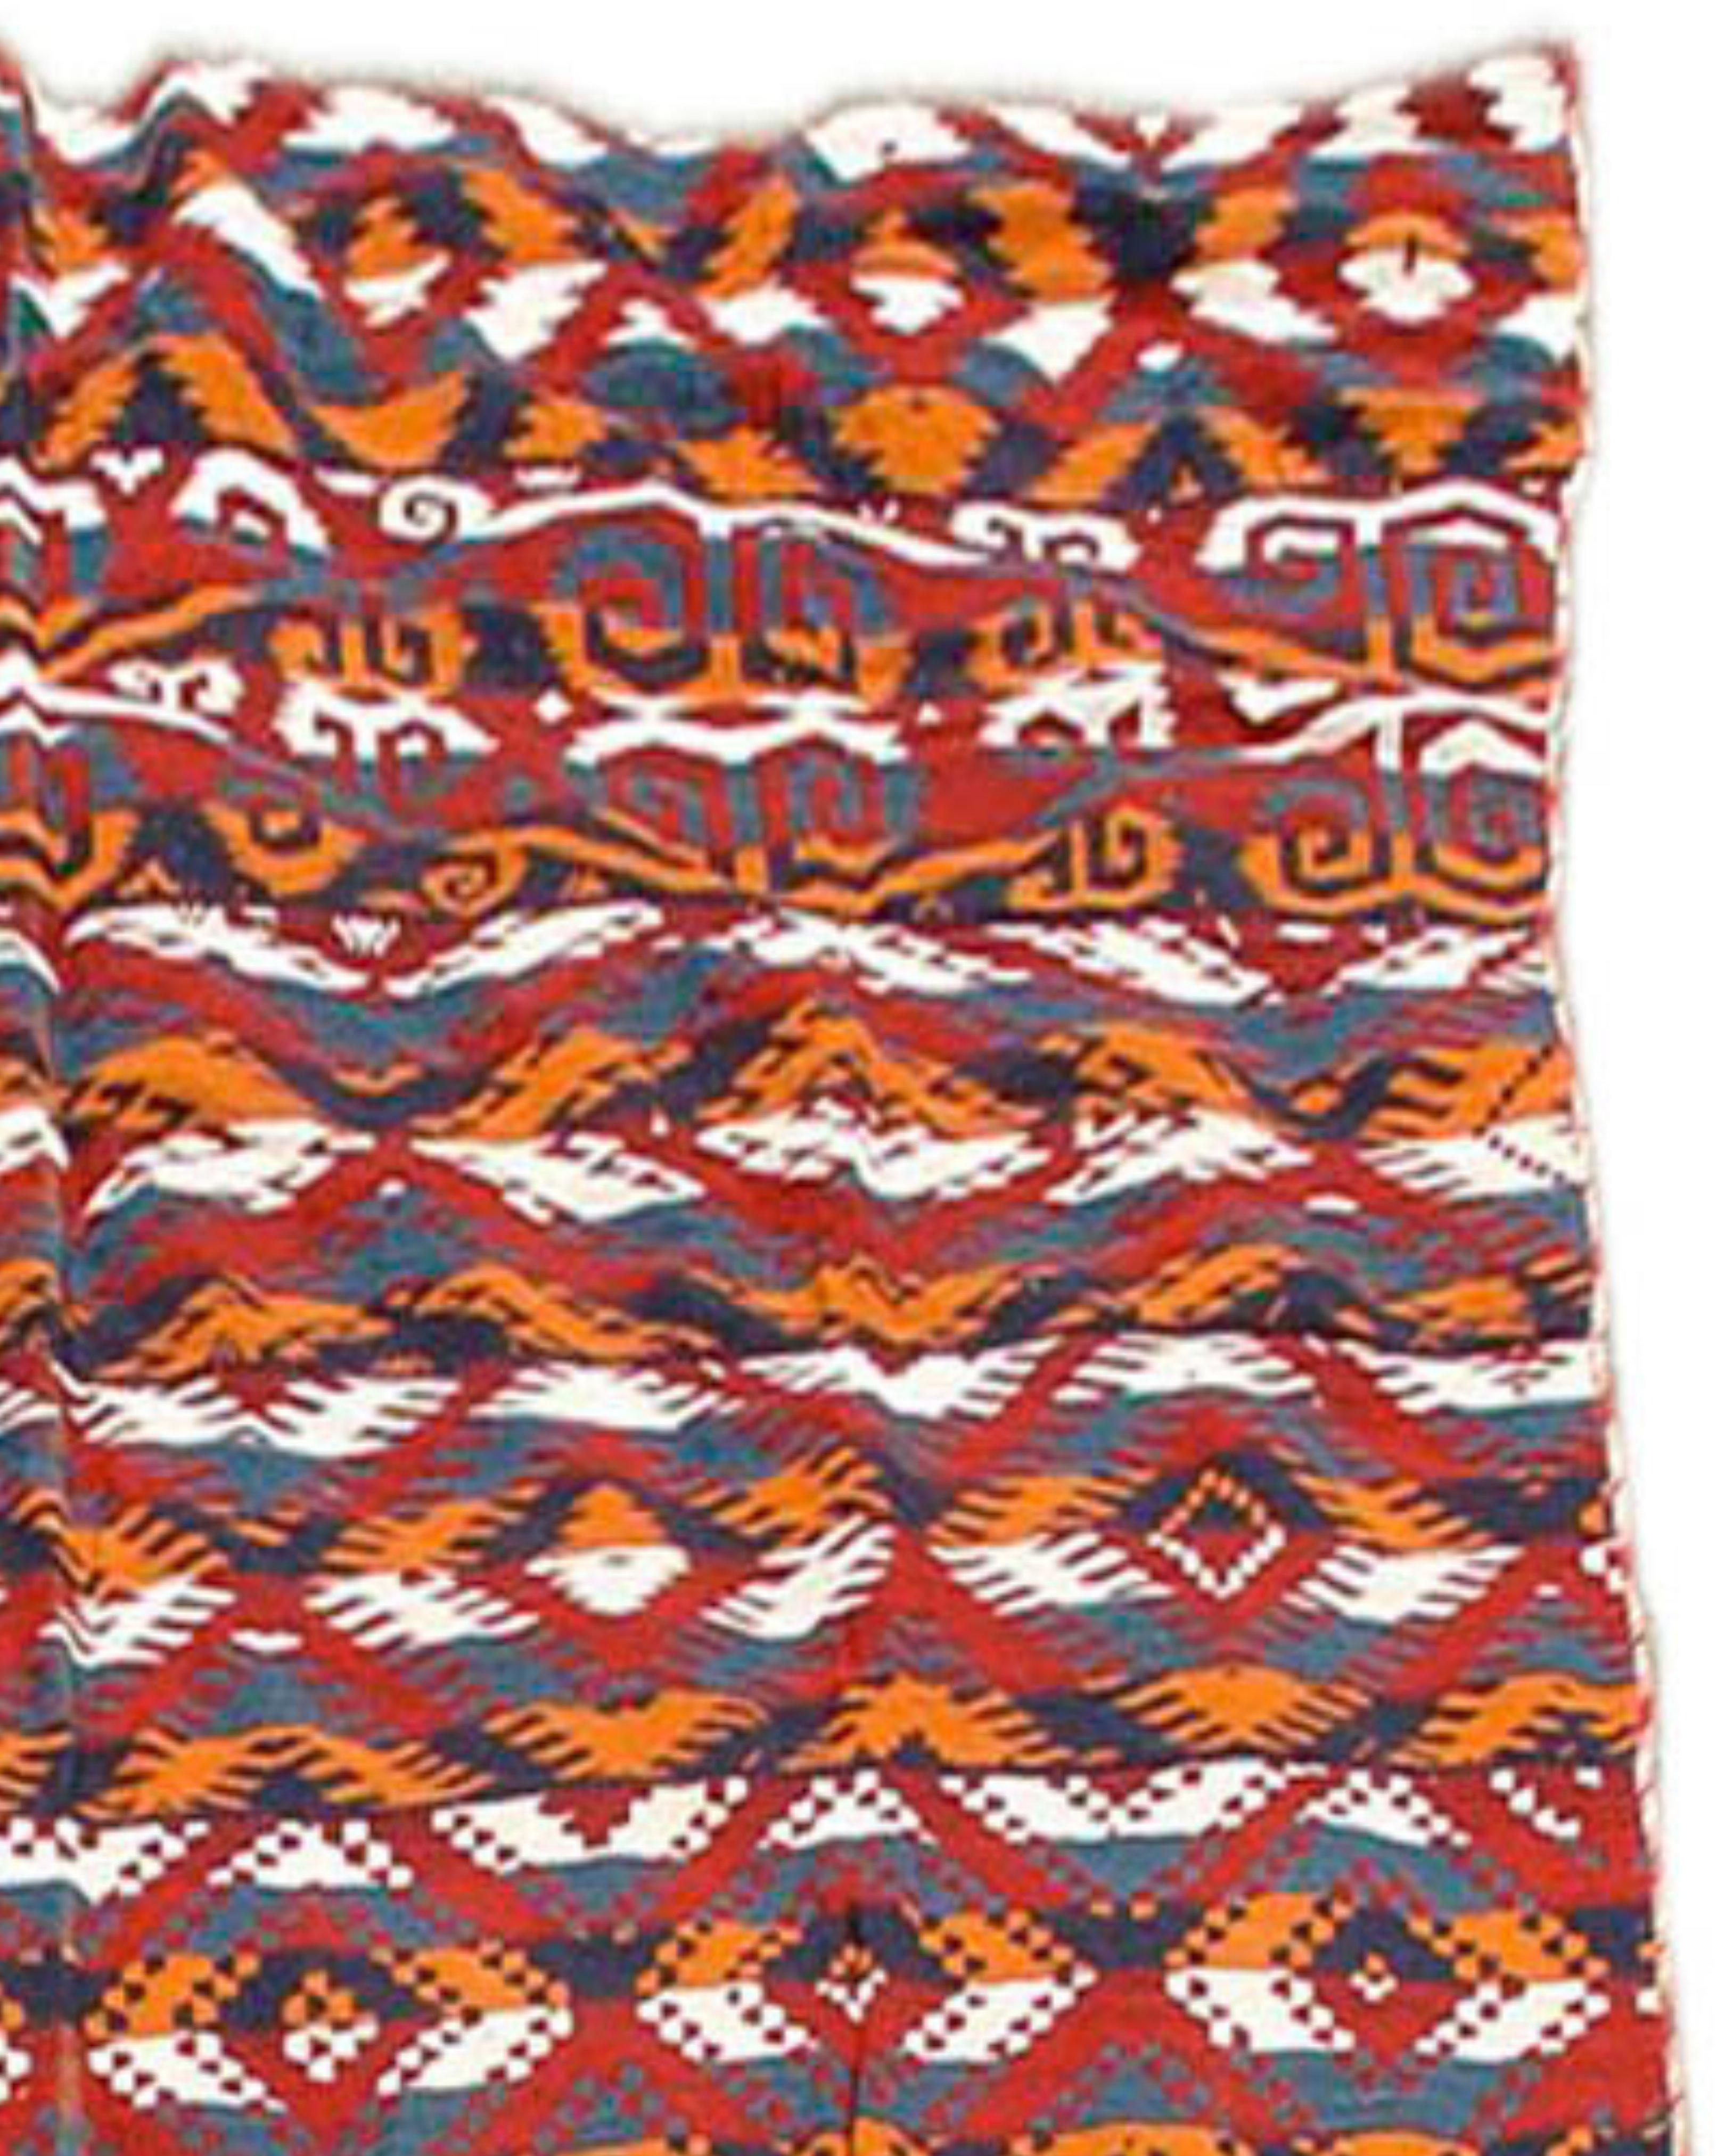 Antiker usbanischer Kelim-Teppich, frühes 20. Jahrhundert

Zusätzliche Informationen:
Abmessungen: 7'8